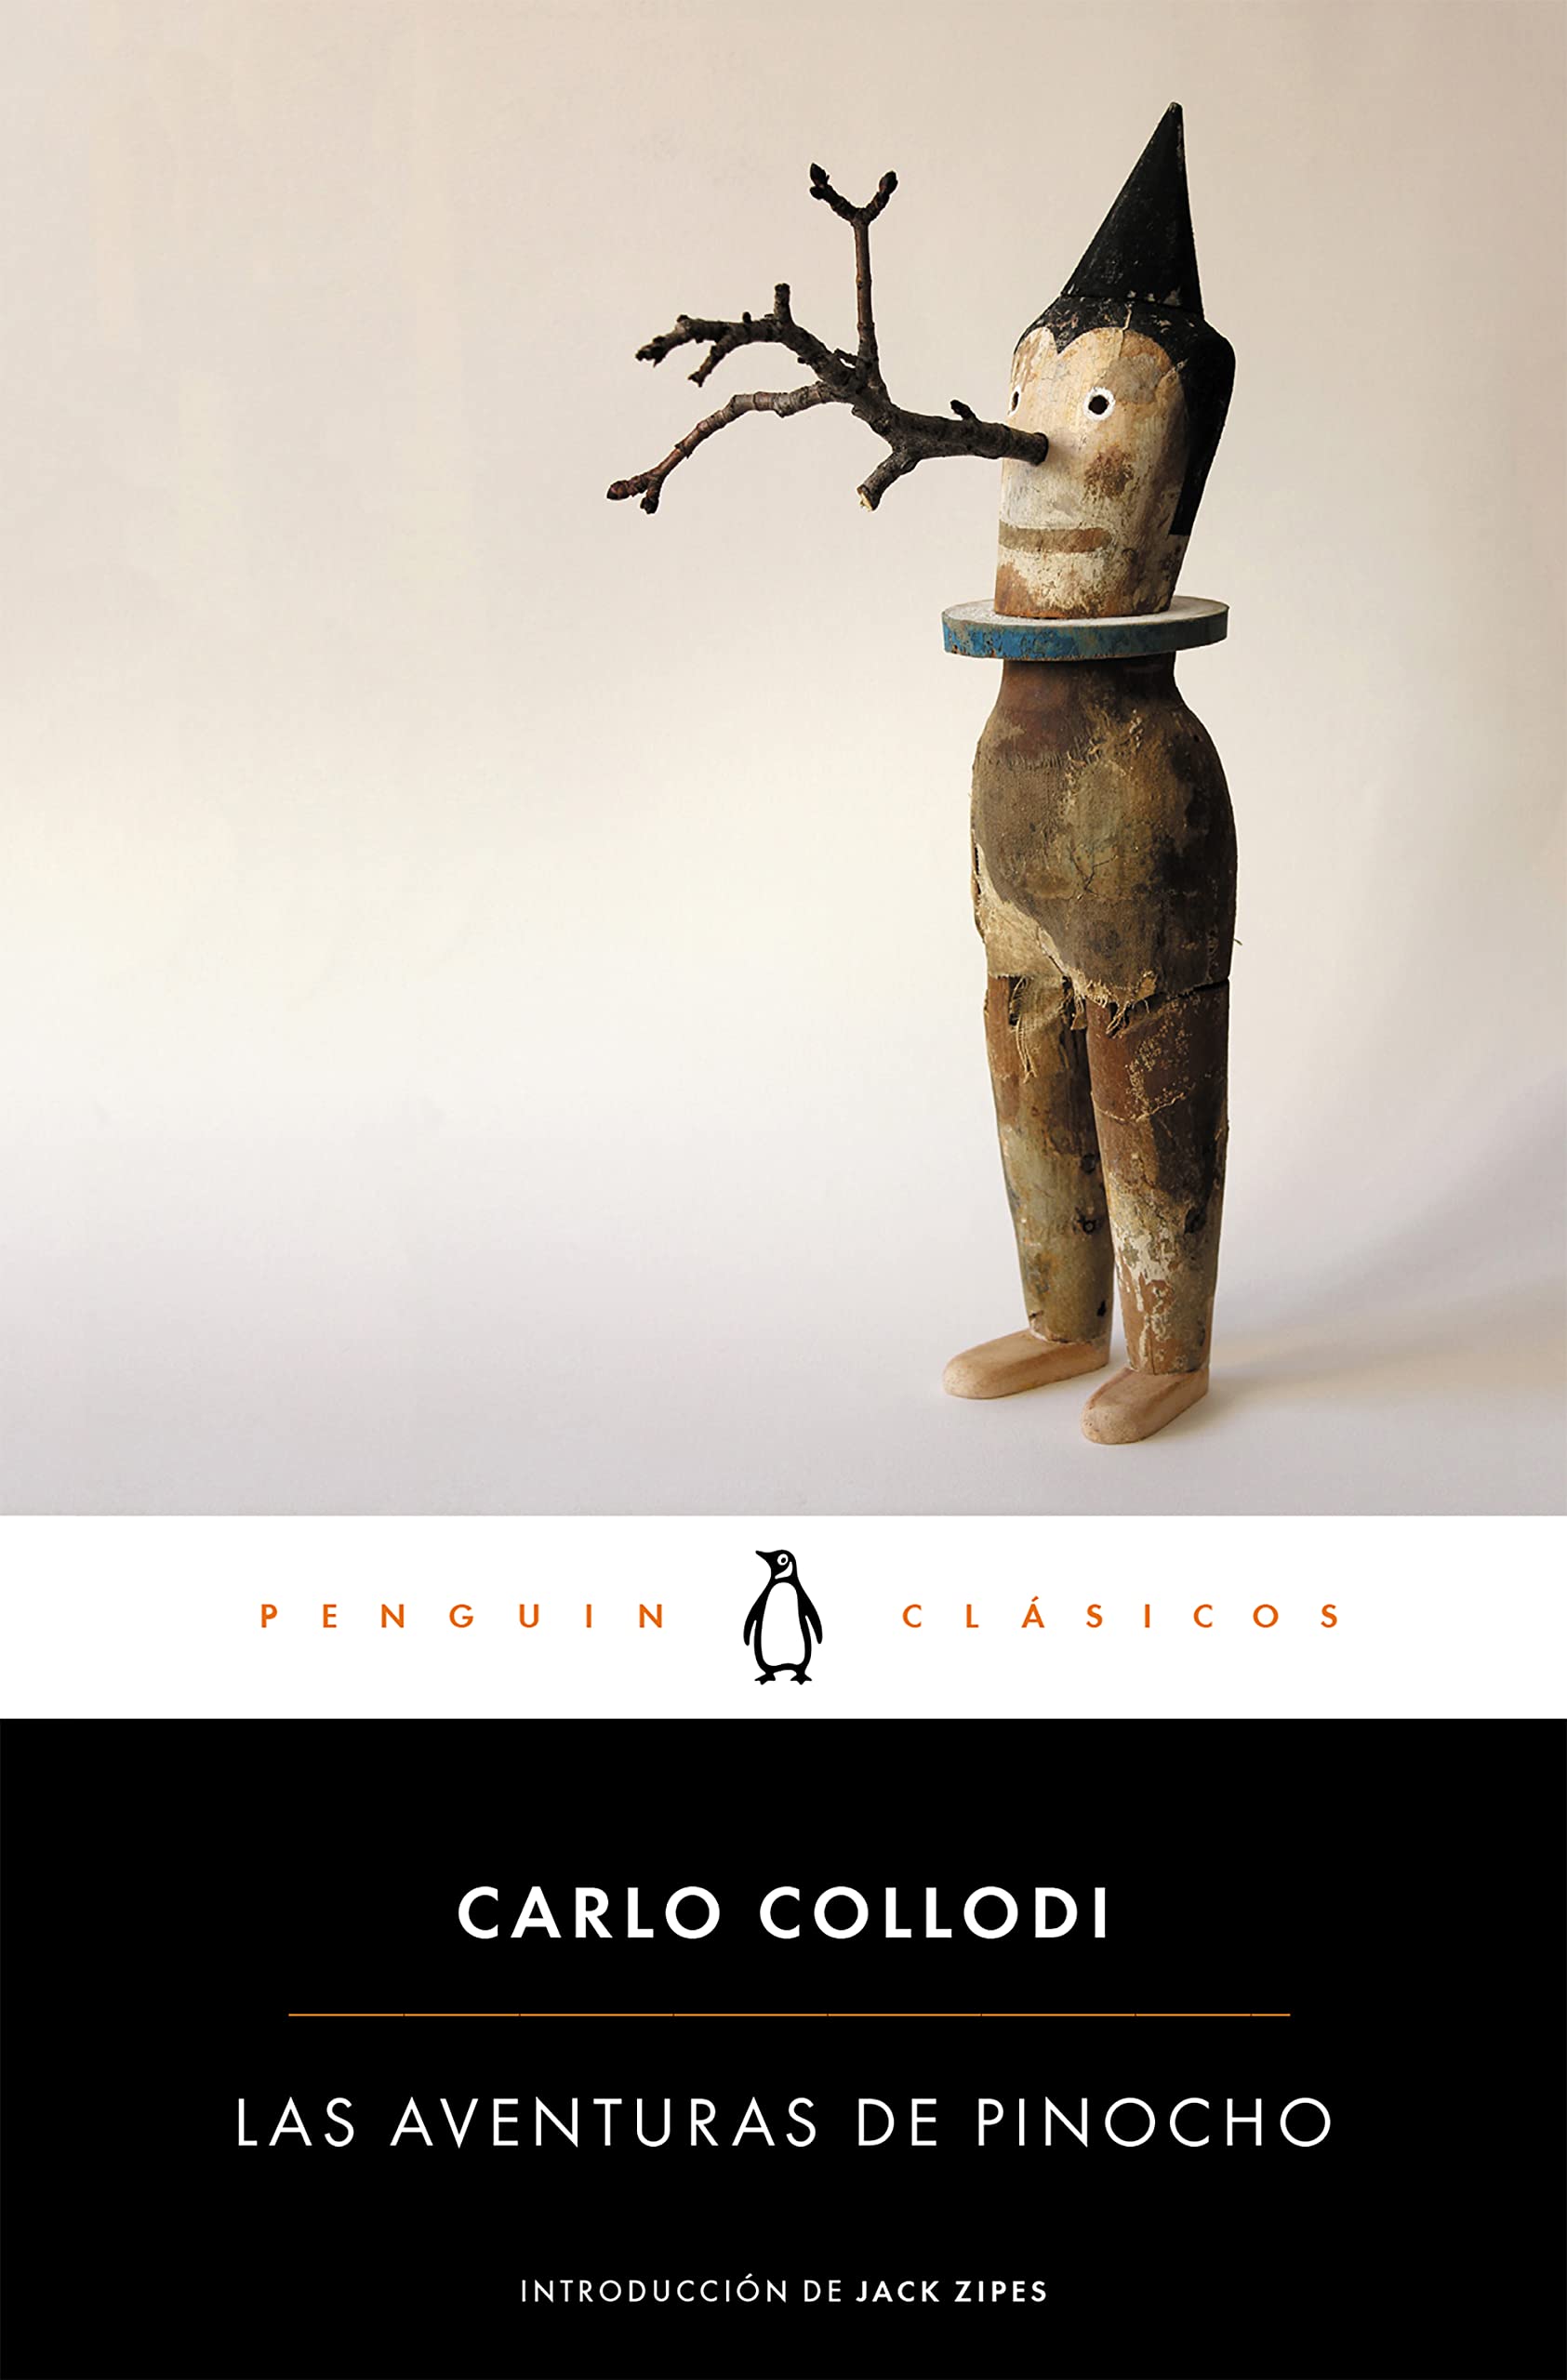 Portada de "Las aventuras de Pinocho", de Carlo Collodi, en la edición de Penguin Classics. (Cortesía: Penguin Random House).